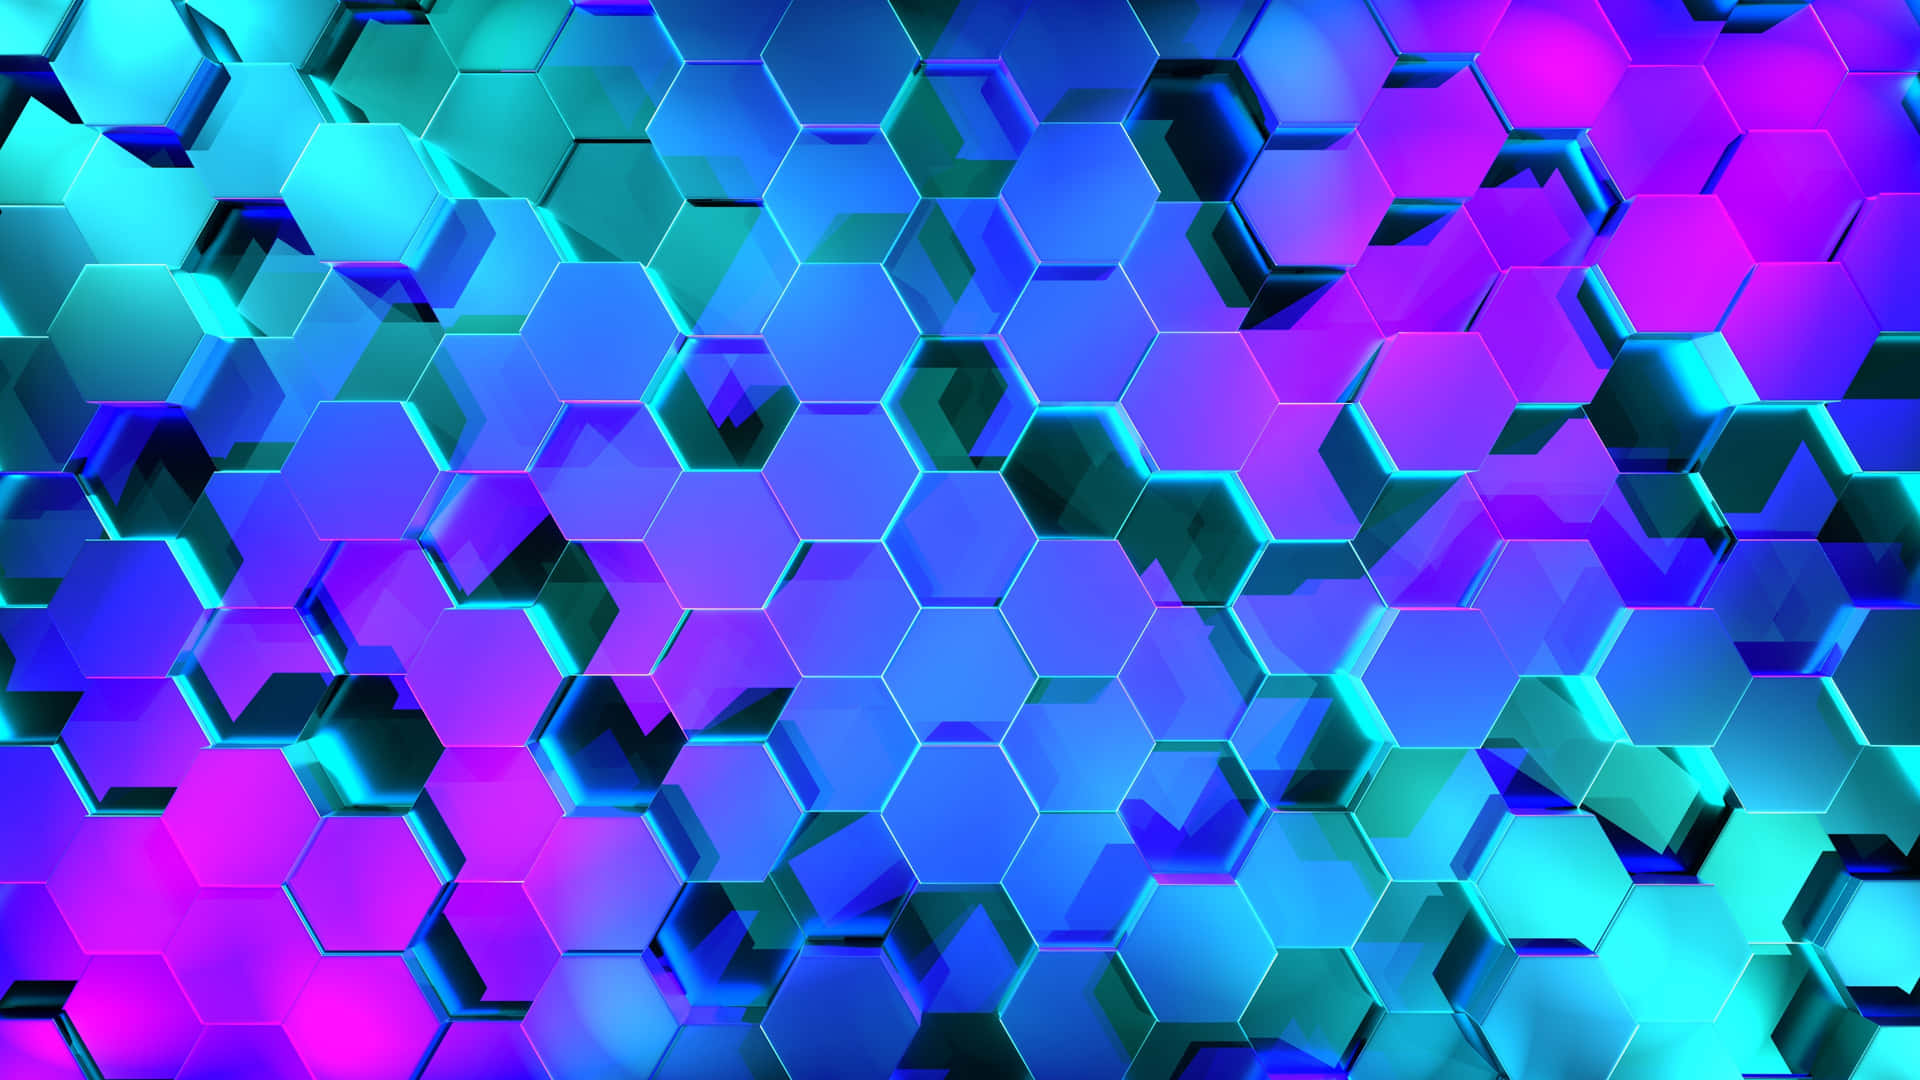 Hexagon 4k - Fange det perfekte geometriske øjeblik Wallpaper